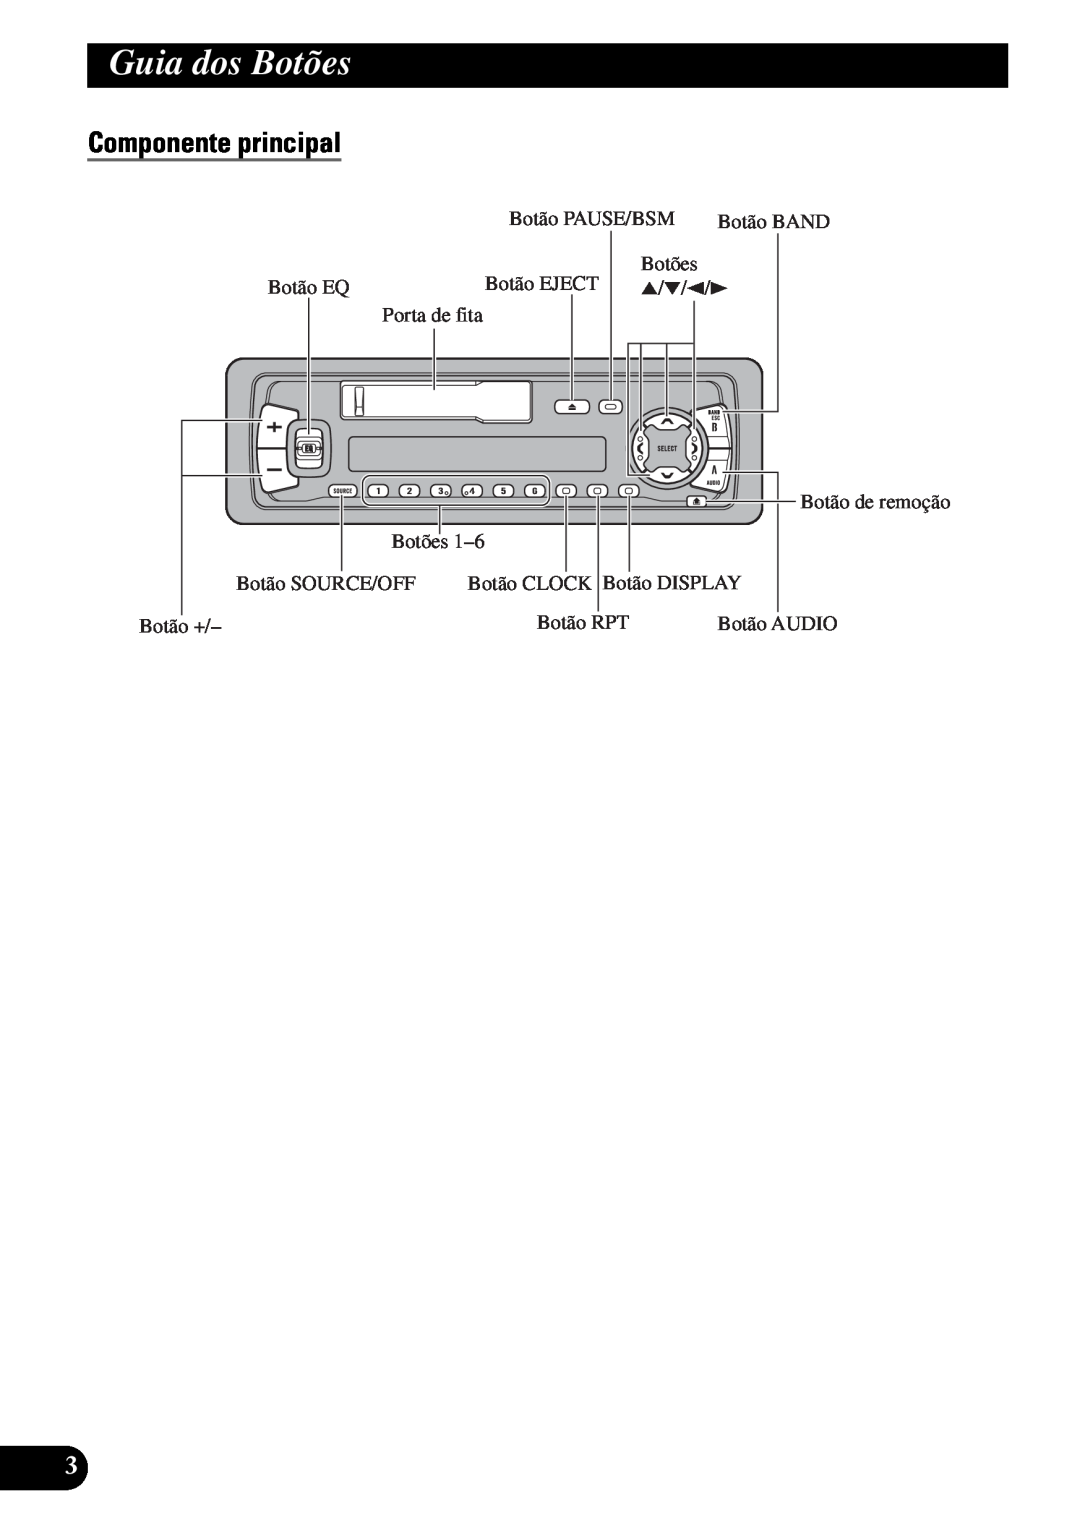 Pioneer KEH-P4950 operation manual Guia dos Botões, Componente principal 